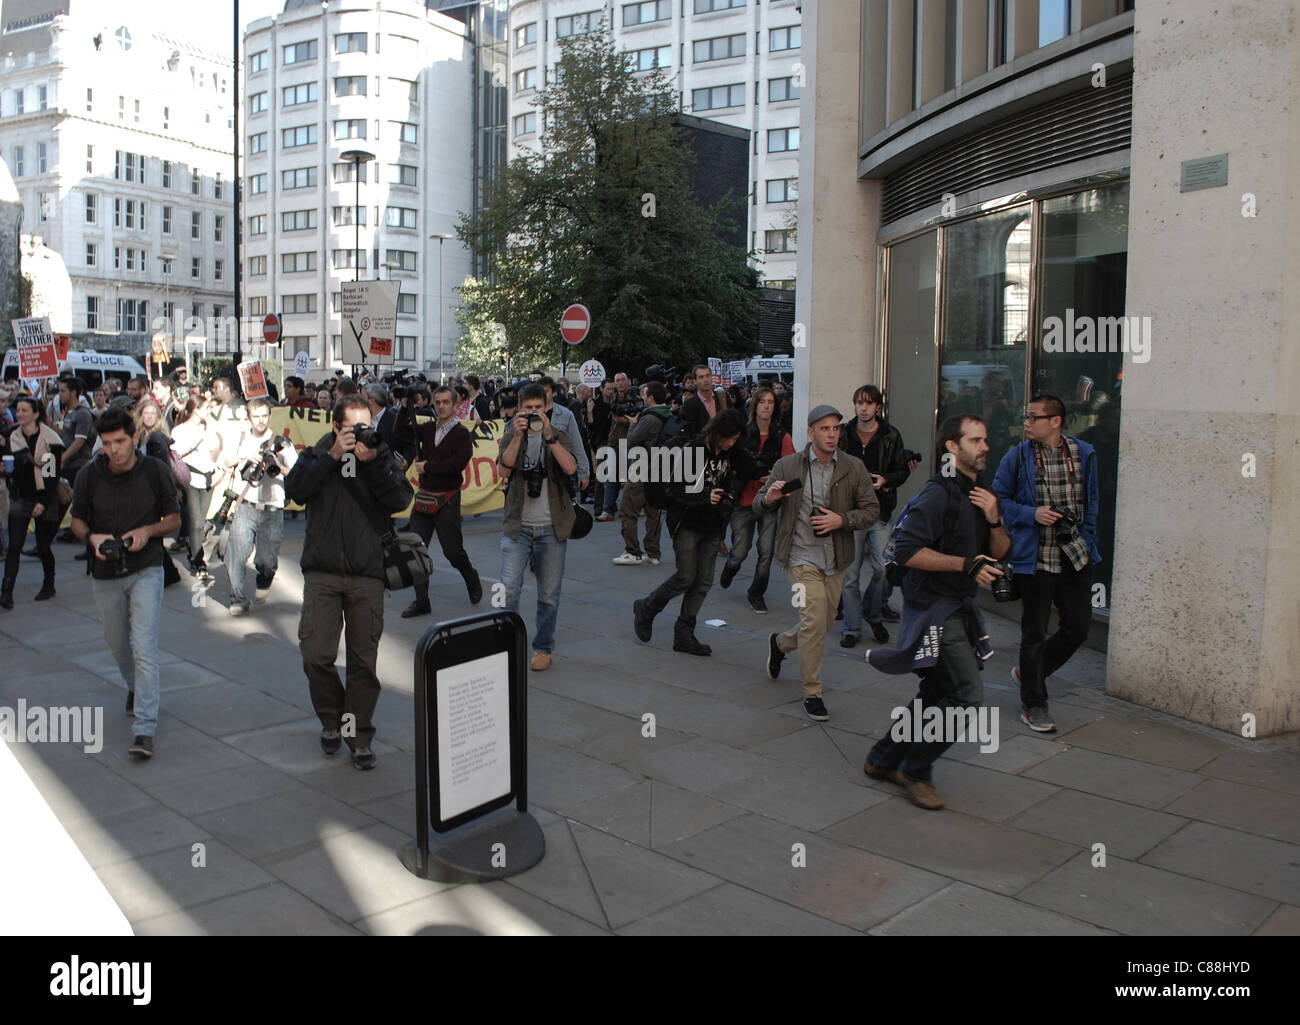 Besetzen London Demonstration um St. Paul am 15. Okt. 11, gegen Kapitalismus, Sparsamkeit und Banken. Inspiriert von ähnlichen Aktionen in Spanien und der Wall Street, sah mindestens 80 größere Städten Proteste am selben Tag. Stockfoto